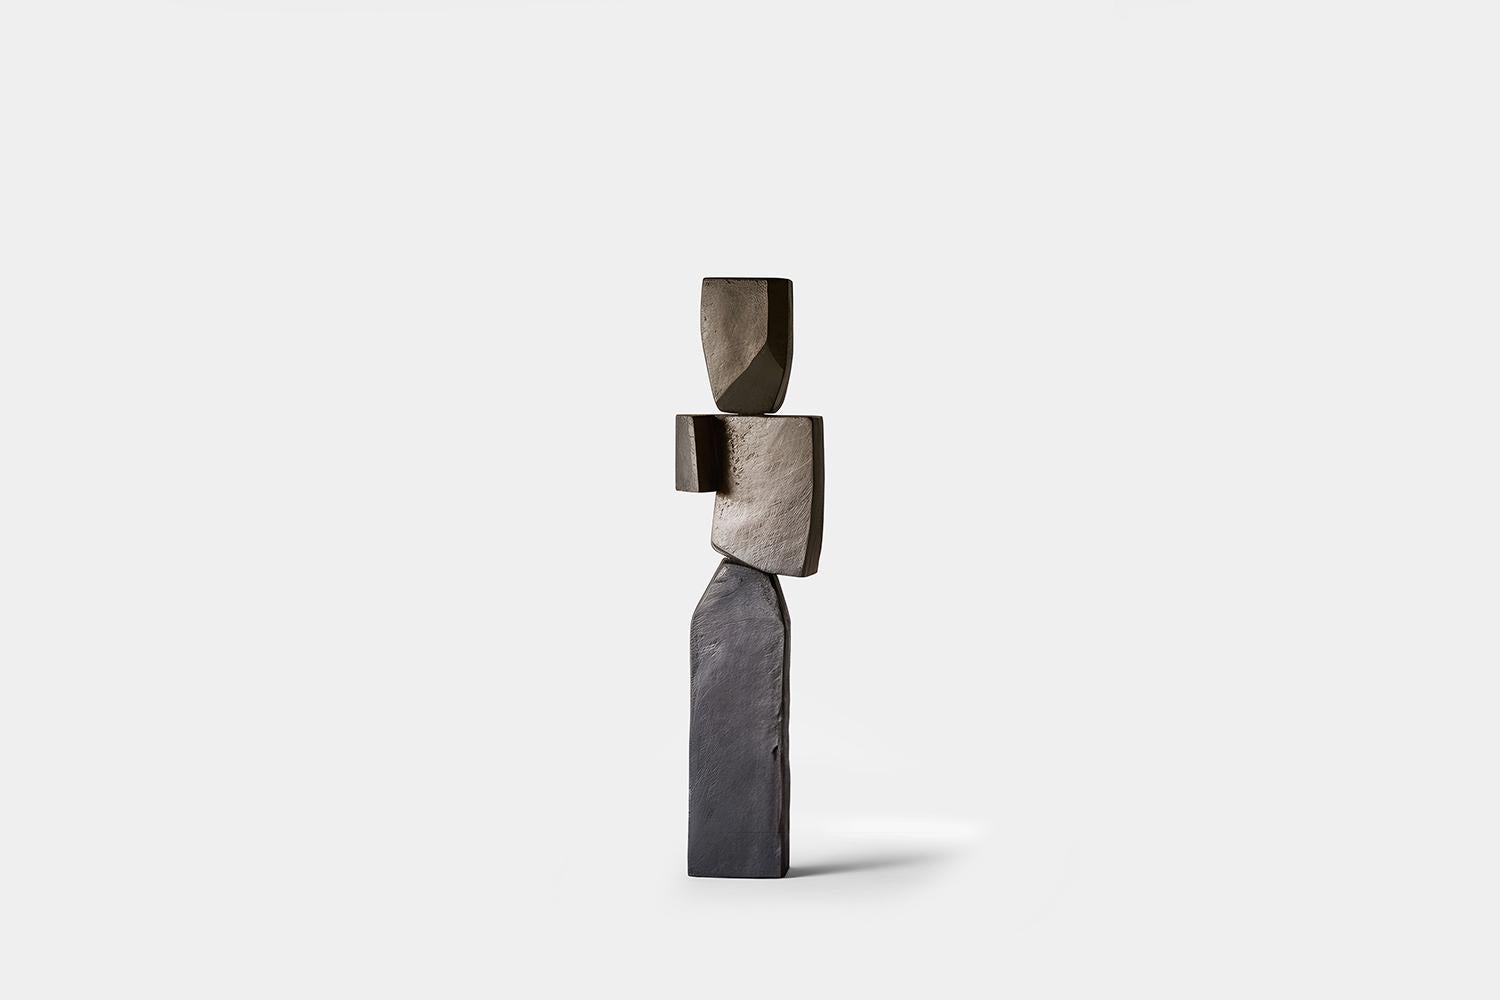 Sculpture biomorphique en bois sculpté dans le style d'Isamu Noguchi, Unseen Force 17 par Joel Escalona



Cette sculpture monolithique, conçue par l'artiste talentueux Joel Escalona, est un exemple impressionnant de la beauté de l'artisanat.